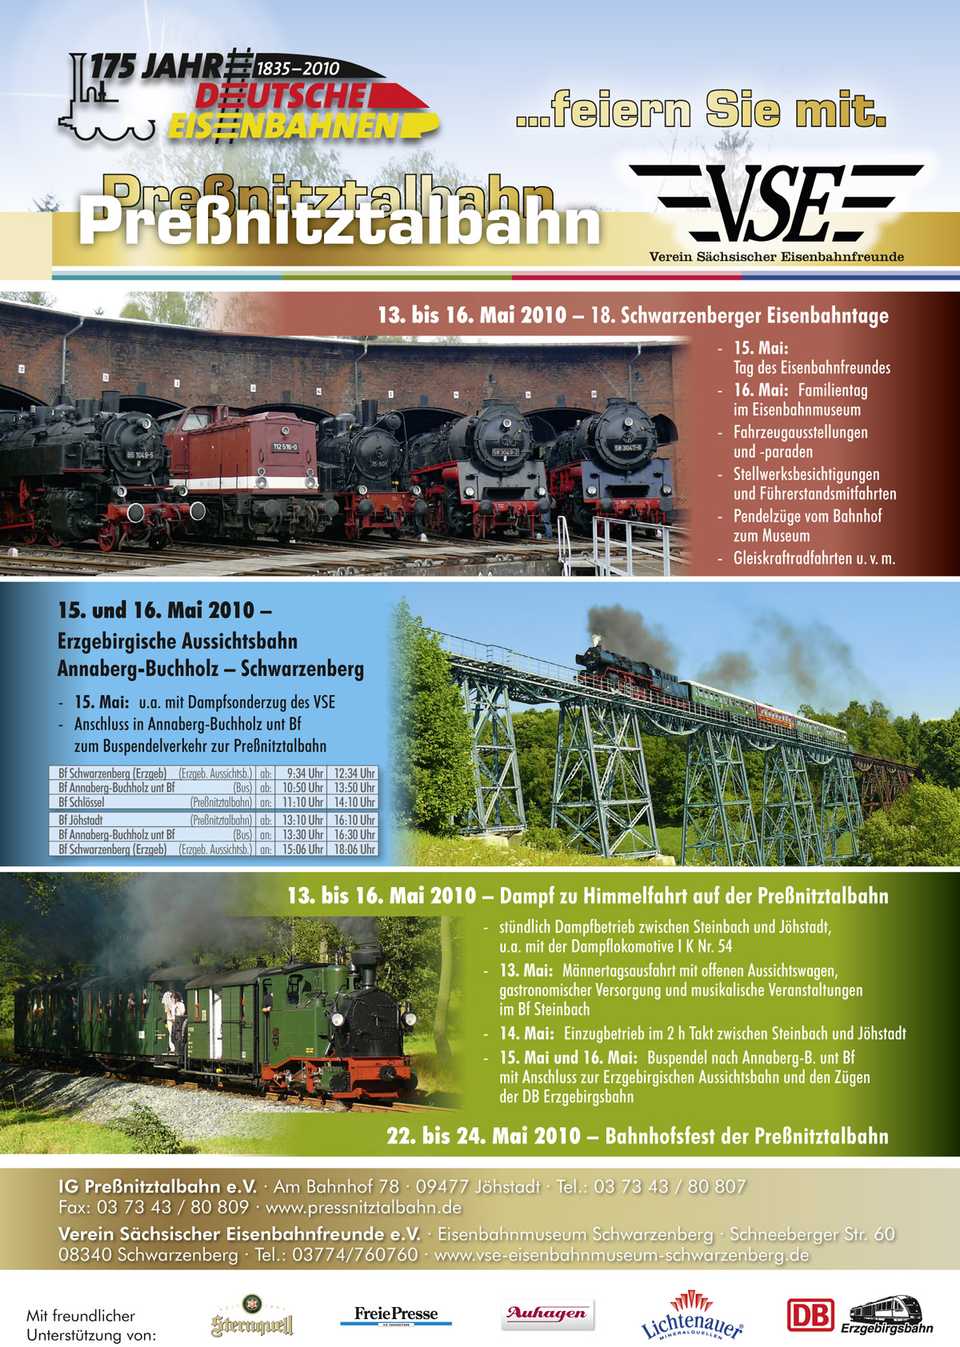 Veranstaltungen von IGP und VSE zum Jubiläum 175 Jahre Deutsche Eisenbahnen.